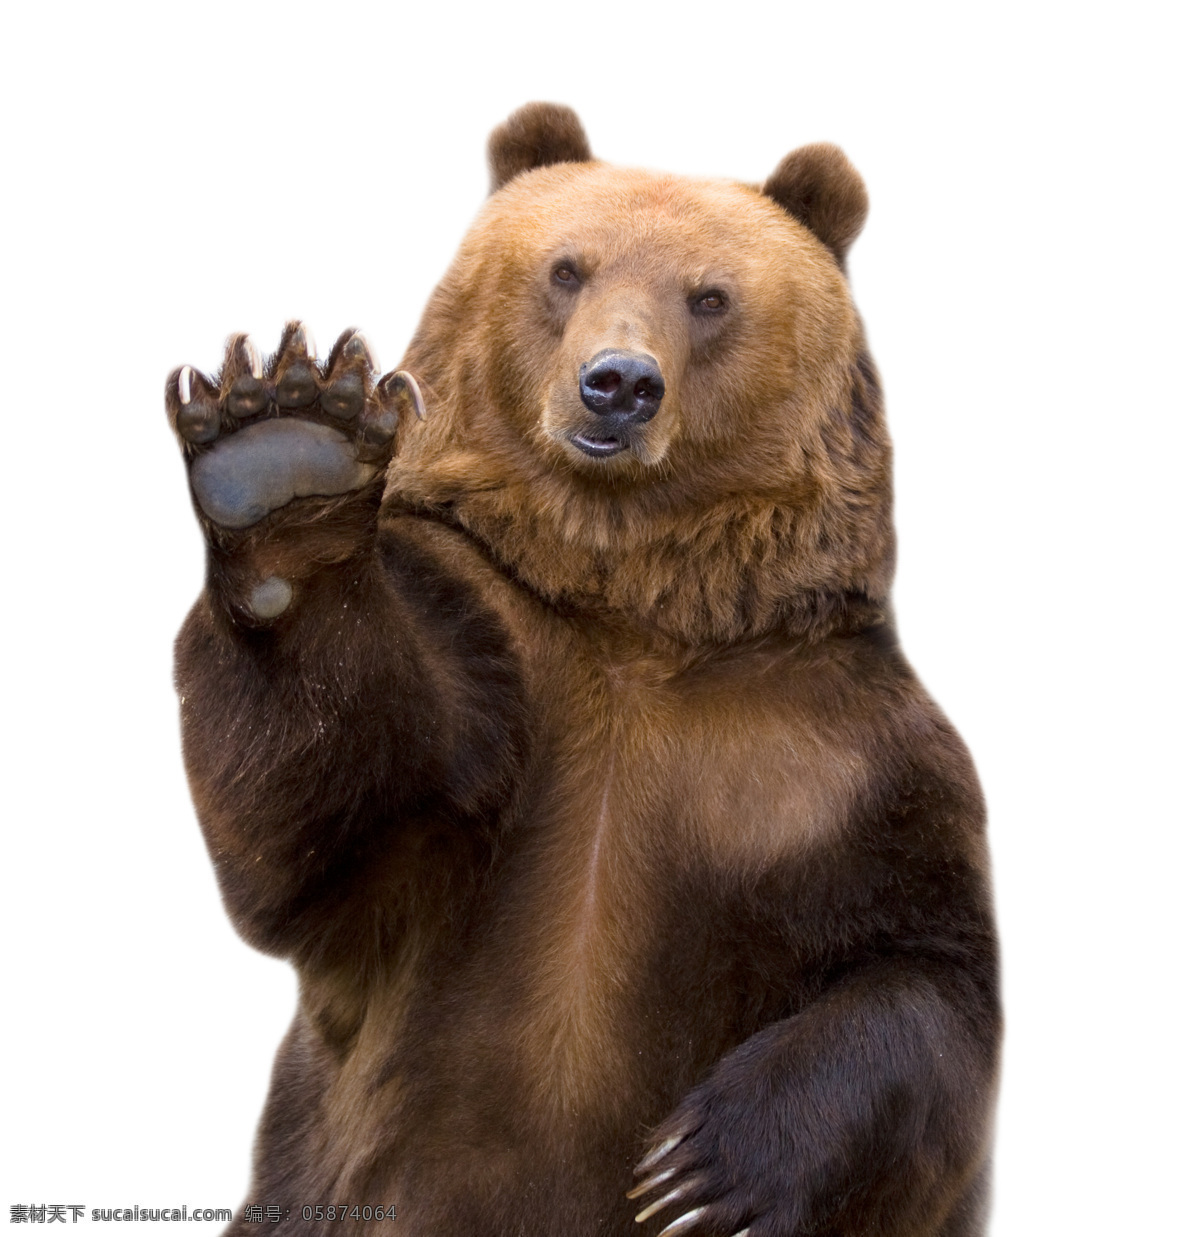 招手 狗熊 动物 野生动物 动物世界 陆地动物 动物摄影 生物世界